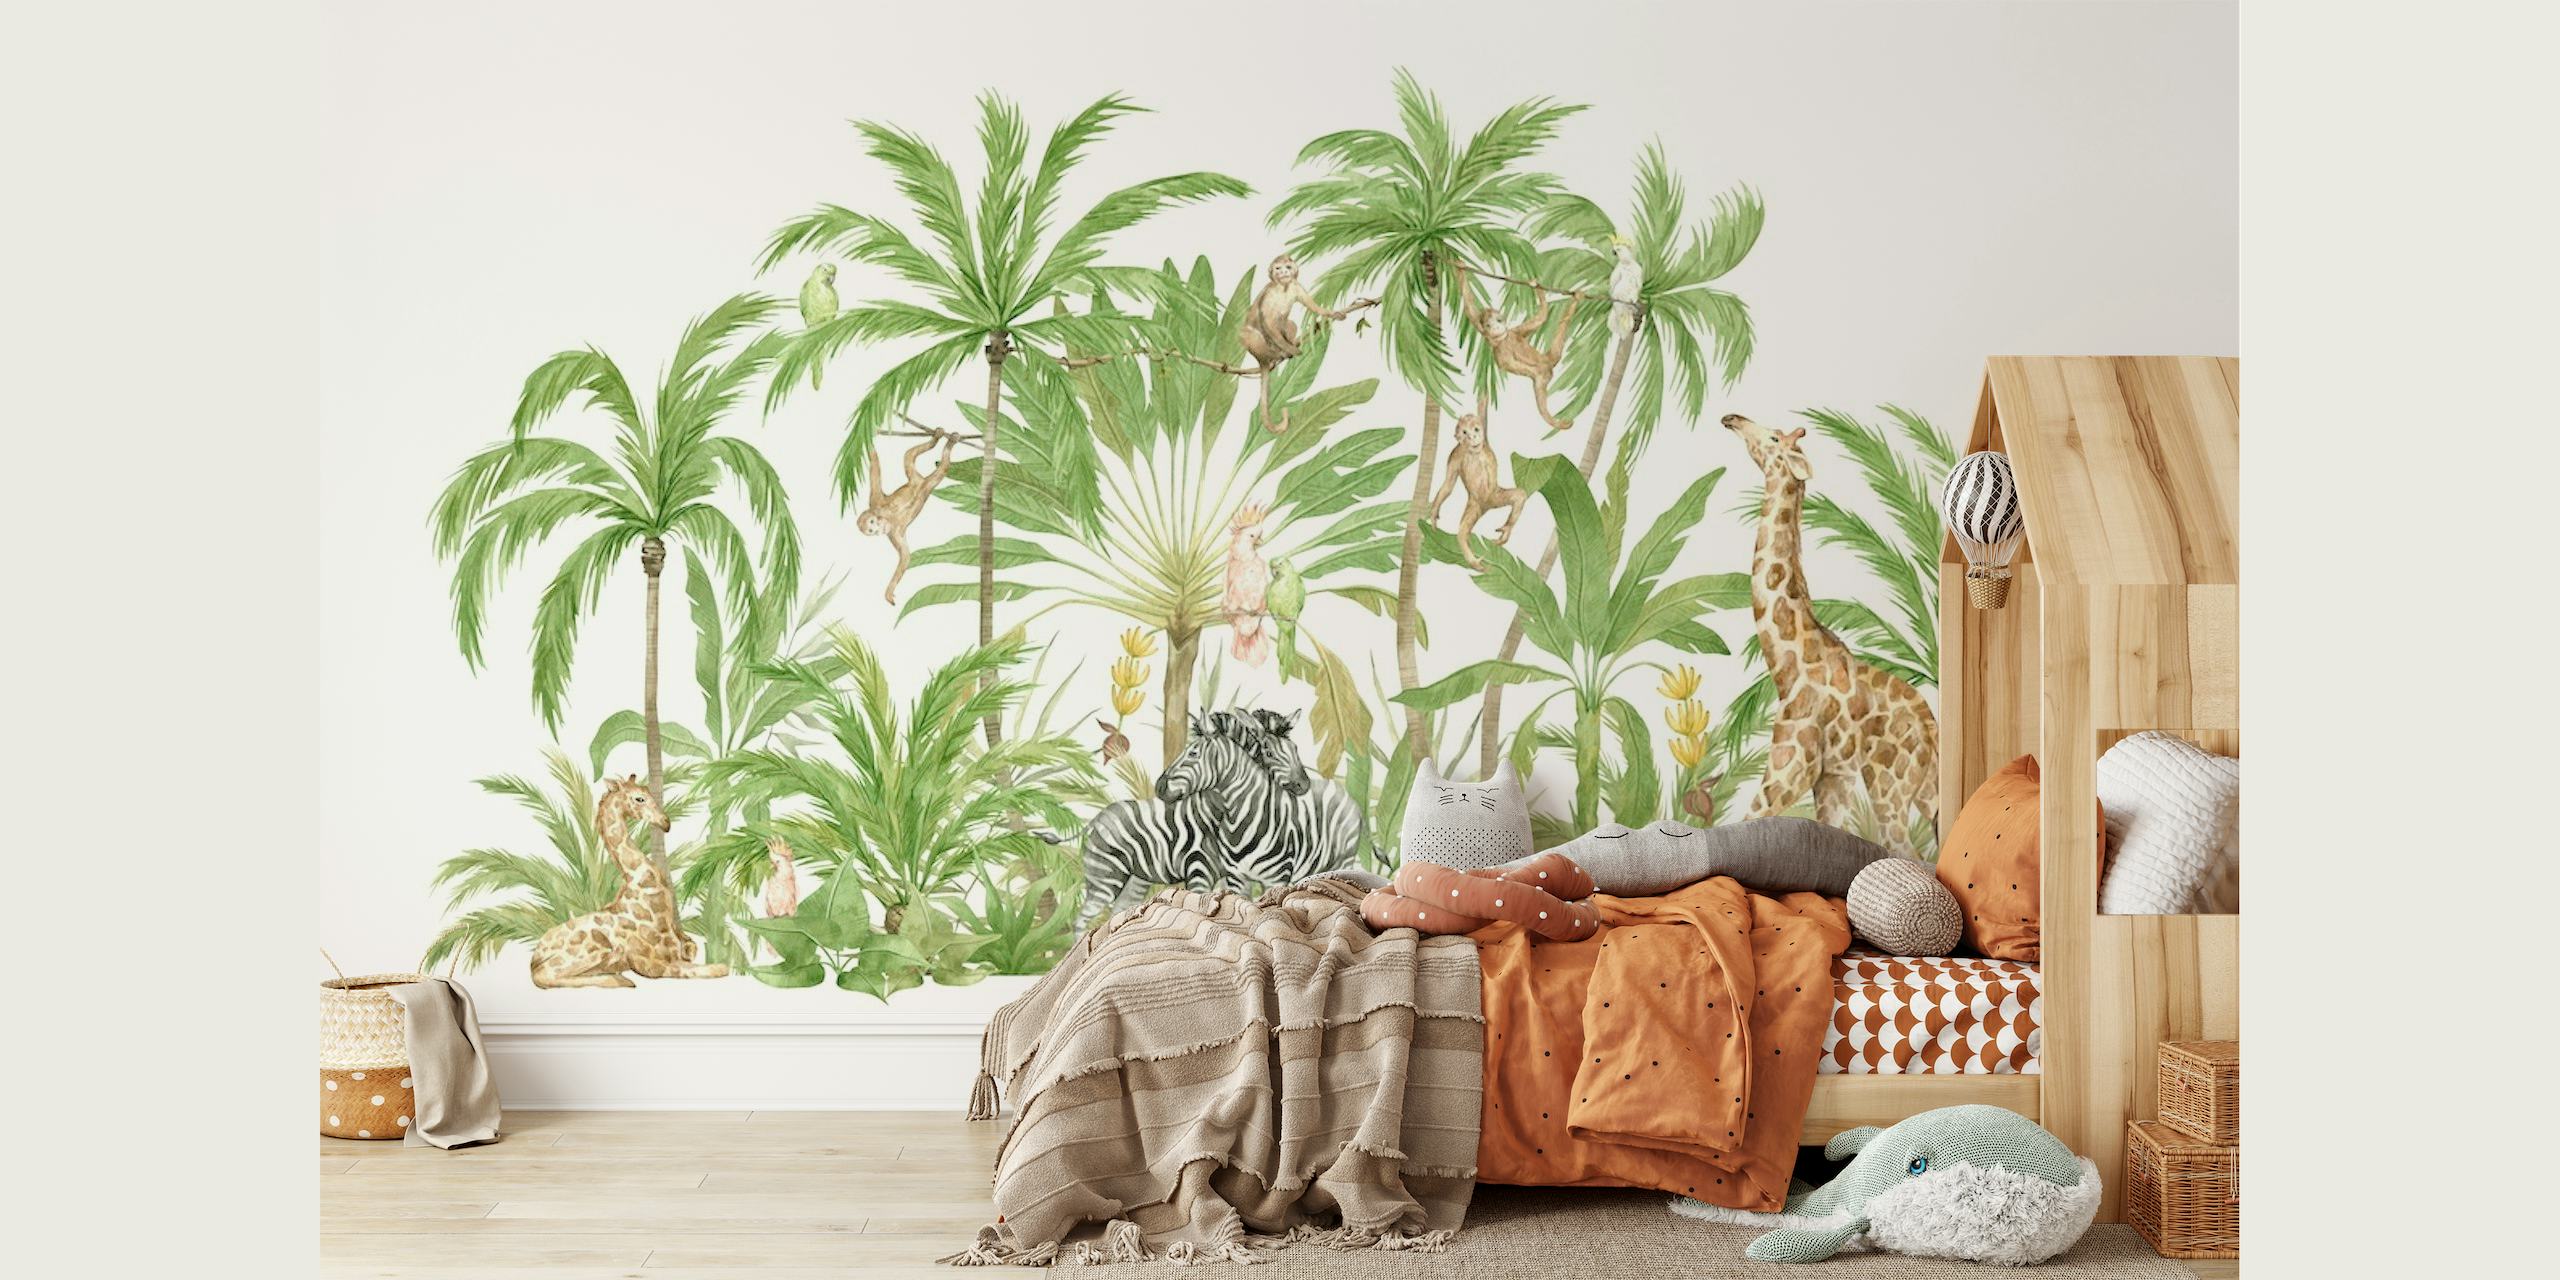 Ilustracija mirnog prizora safarija s divljim životinjama i tropskim biljkama na zidnom muralu